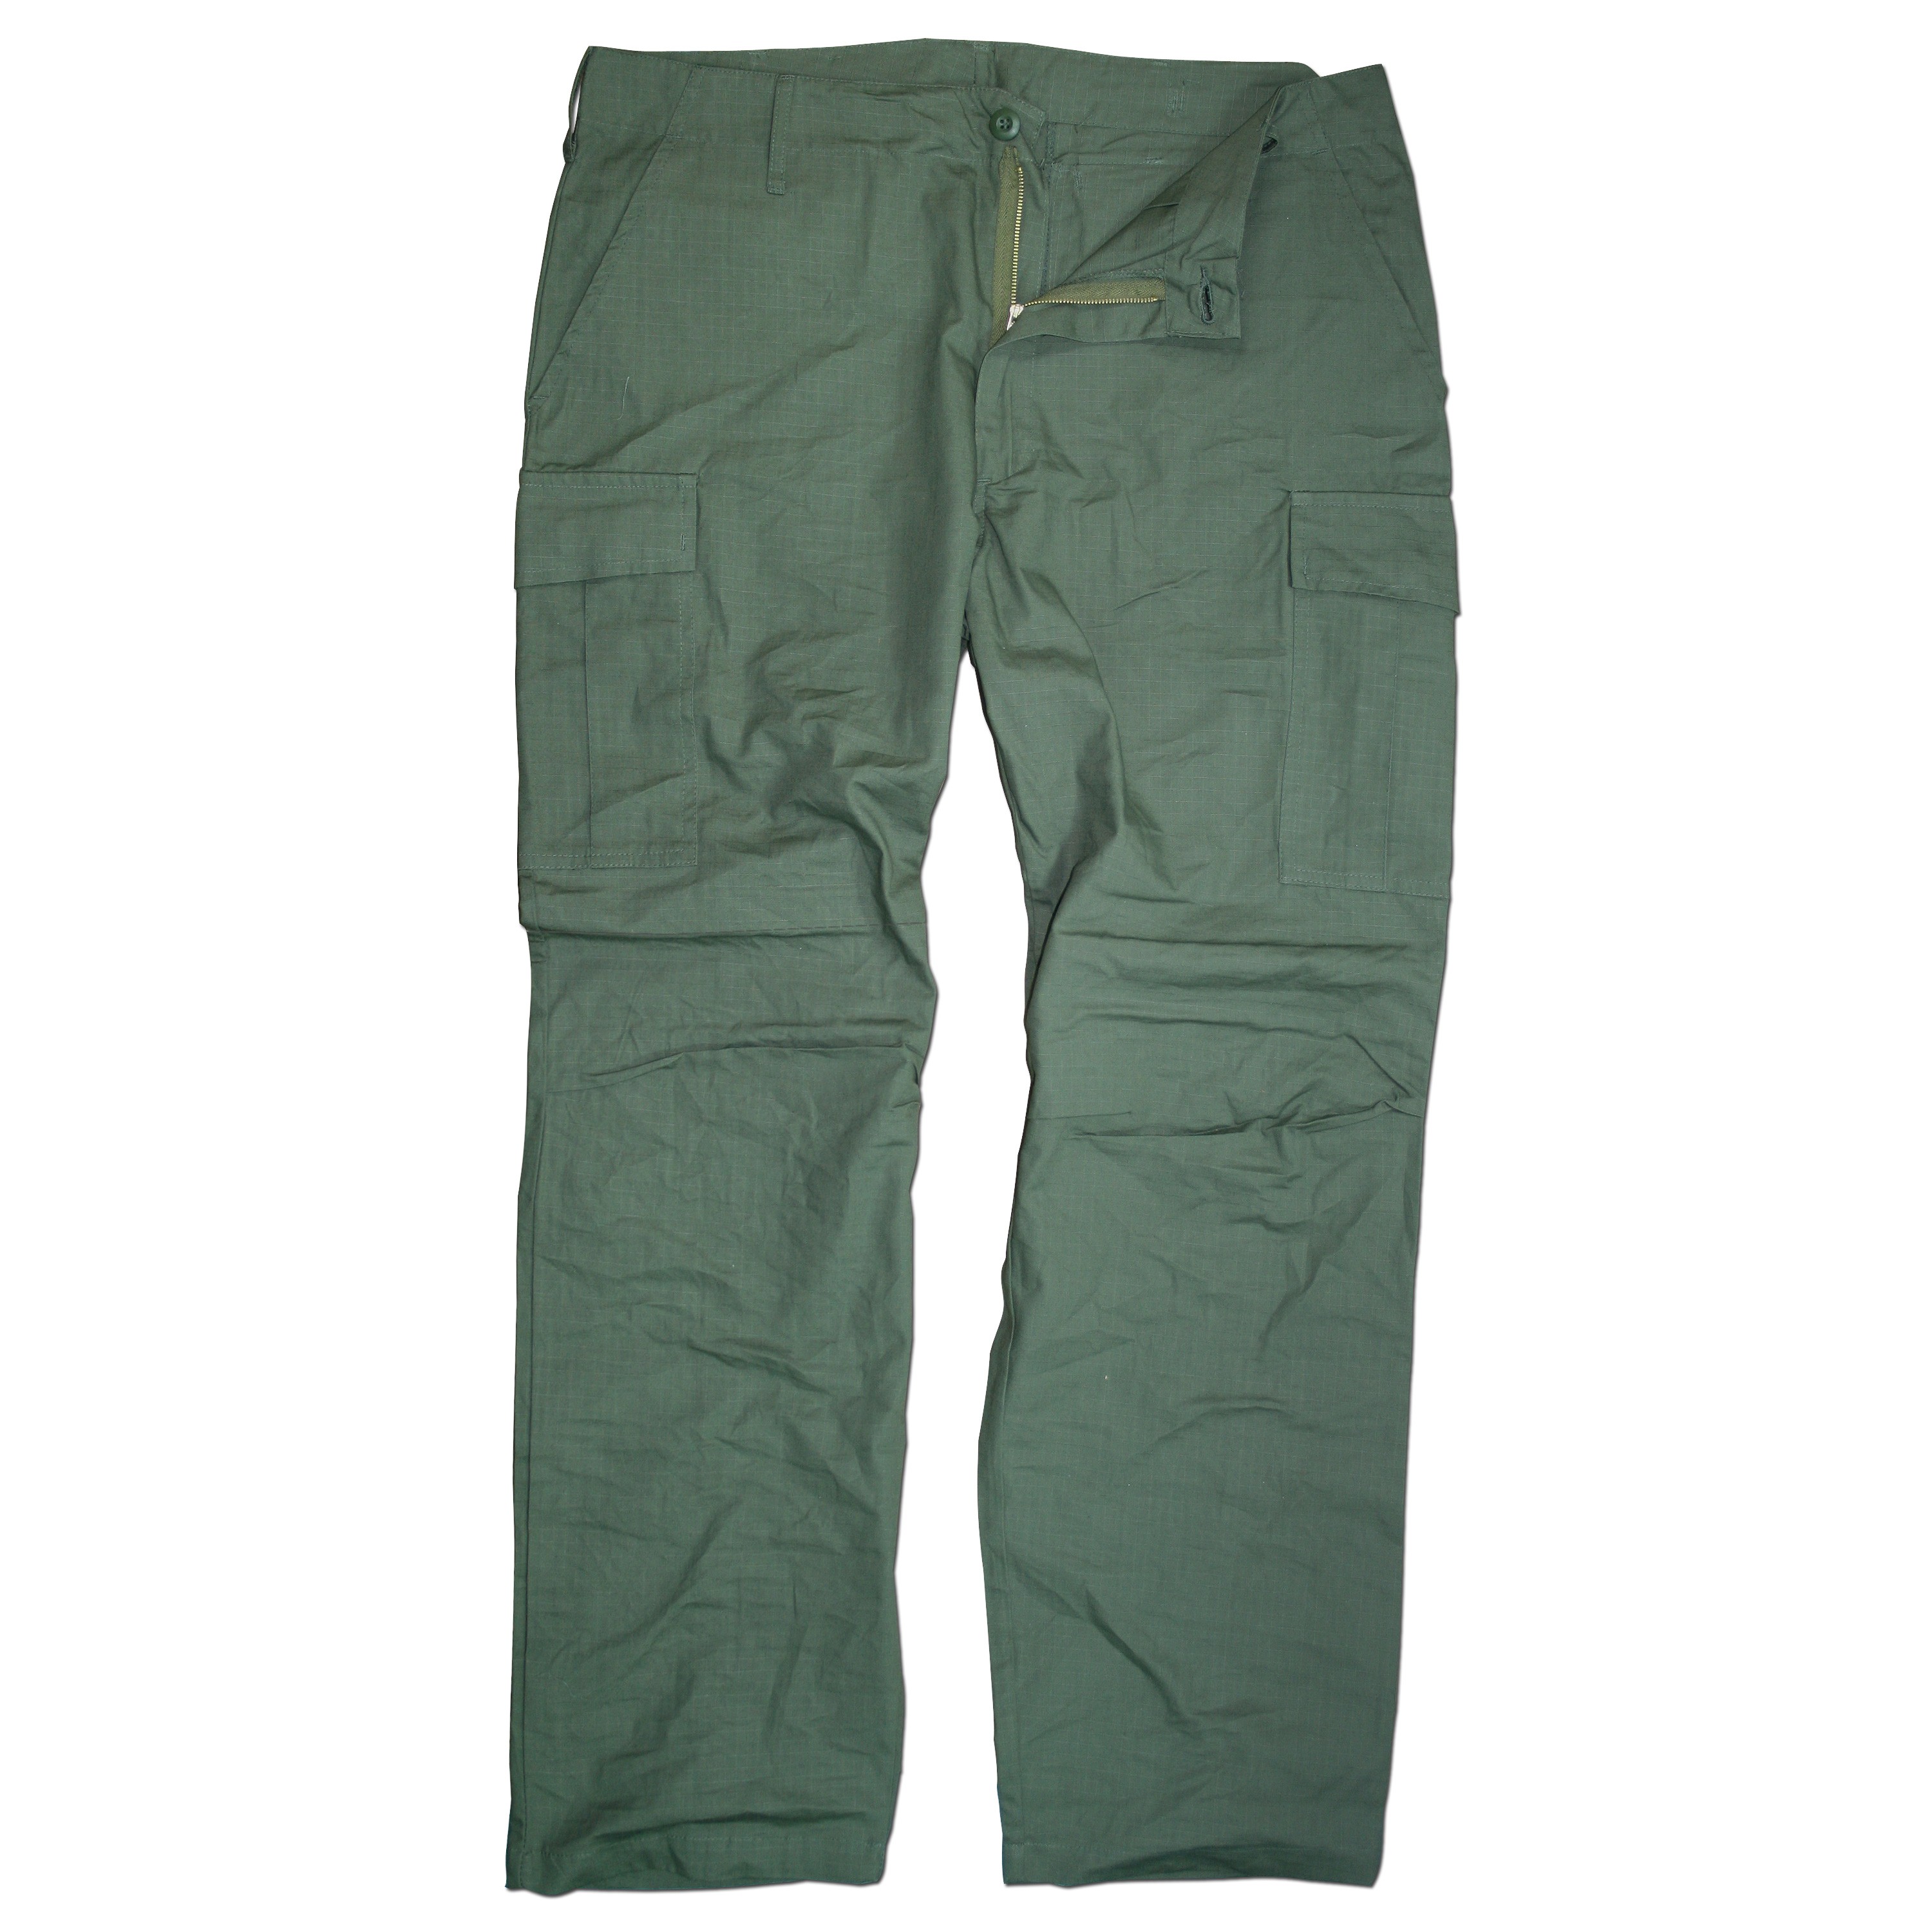 Vietnam style field pants olive | Vietnam style field pants olive ...